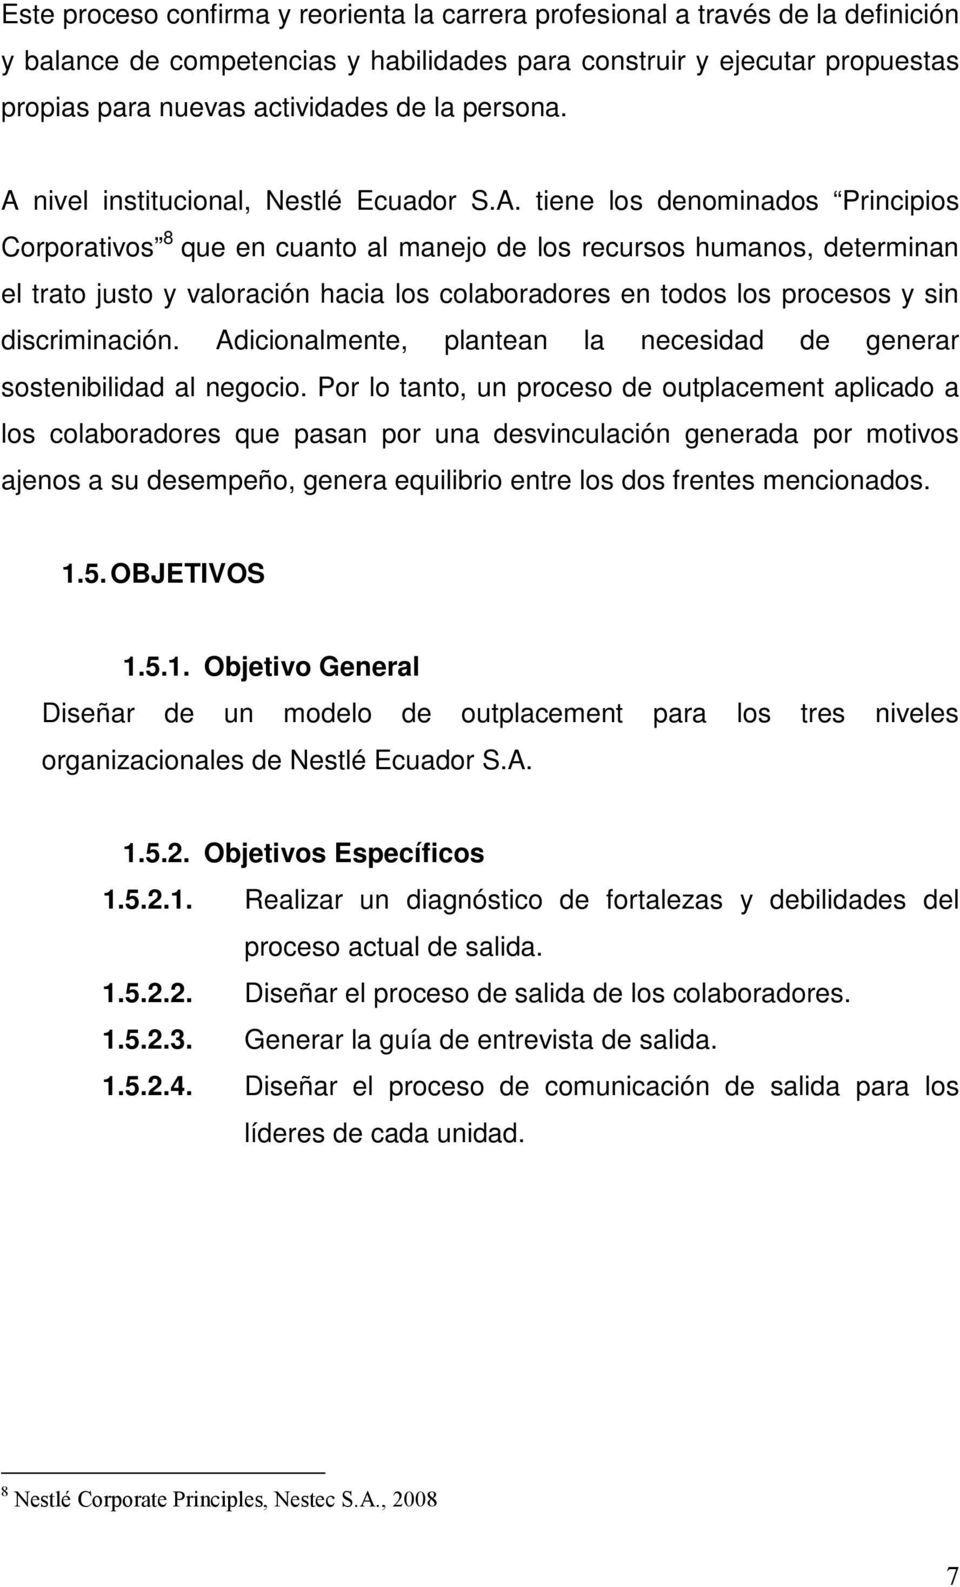 nivel institucional, Nestlé Ecuador S.A.